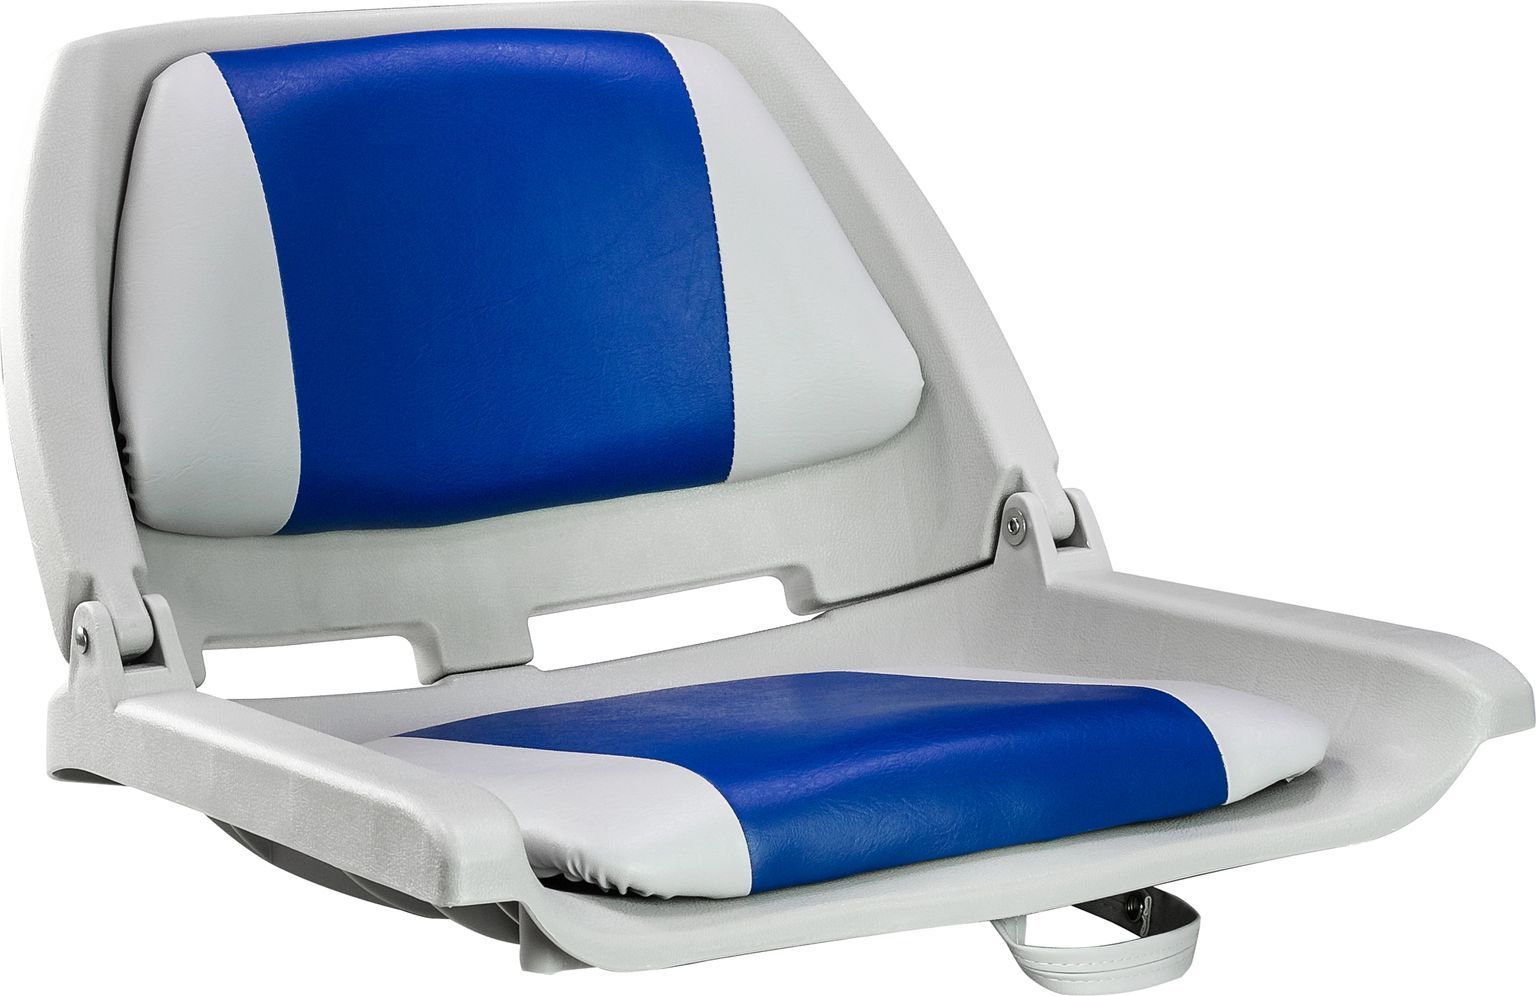 Кресло пластмассовое складное с подложкой Molded Fold-Down Boat Seat,серый/голубой 75109GB кресло пластмассовое складное с подложкой deluxe all weather seat белый красный 75113wr